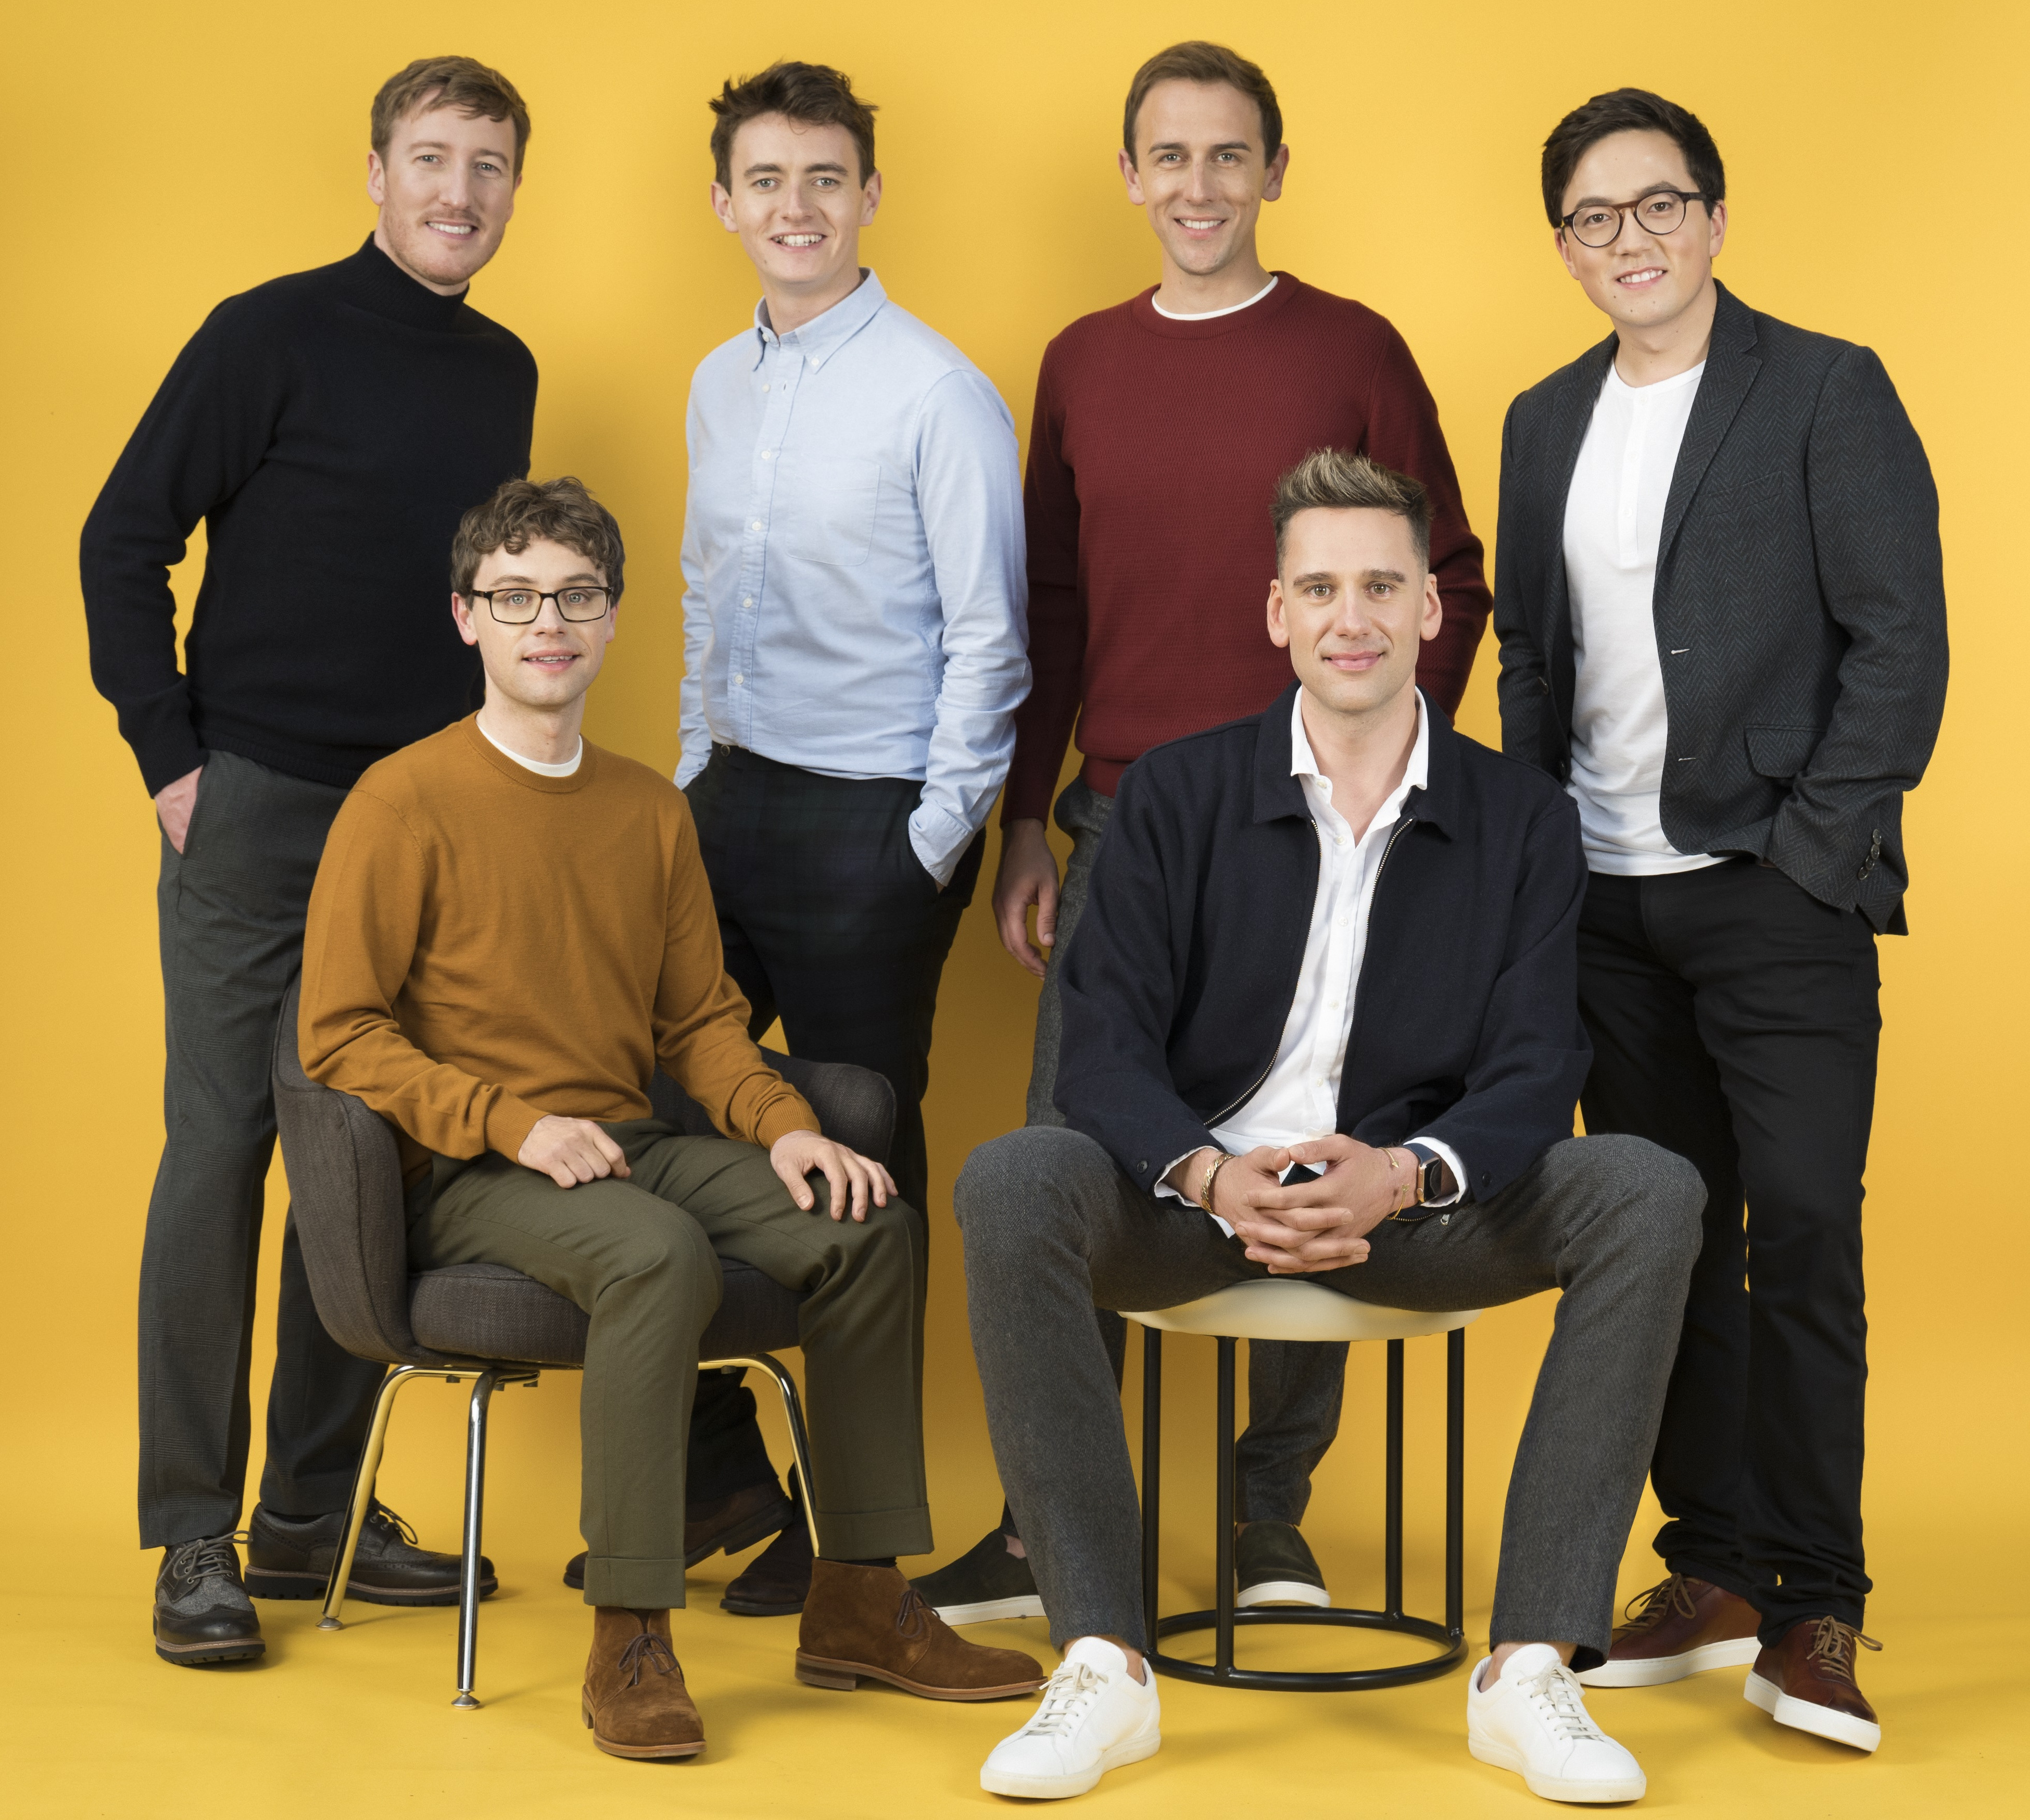 Sechs junge Männer in casual Business-Kleidung vor gelbem Hintergrund